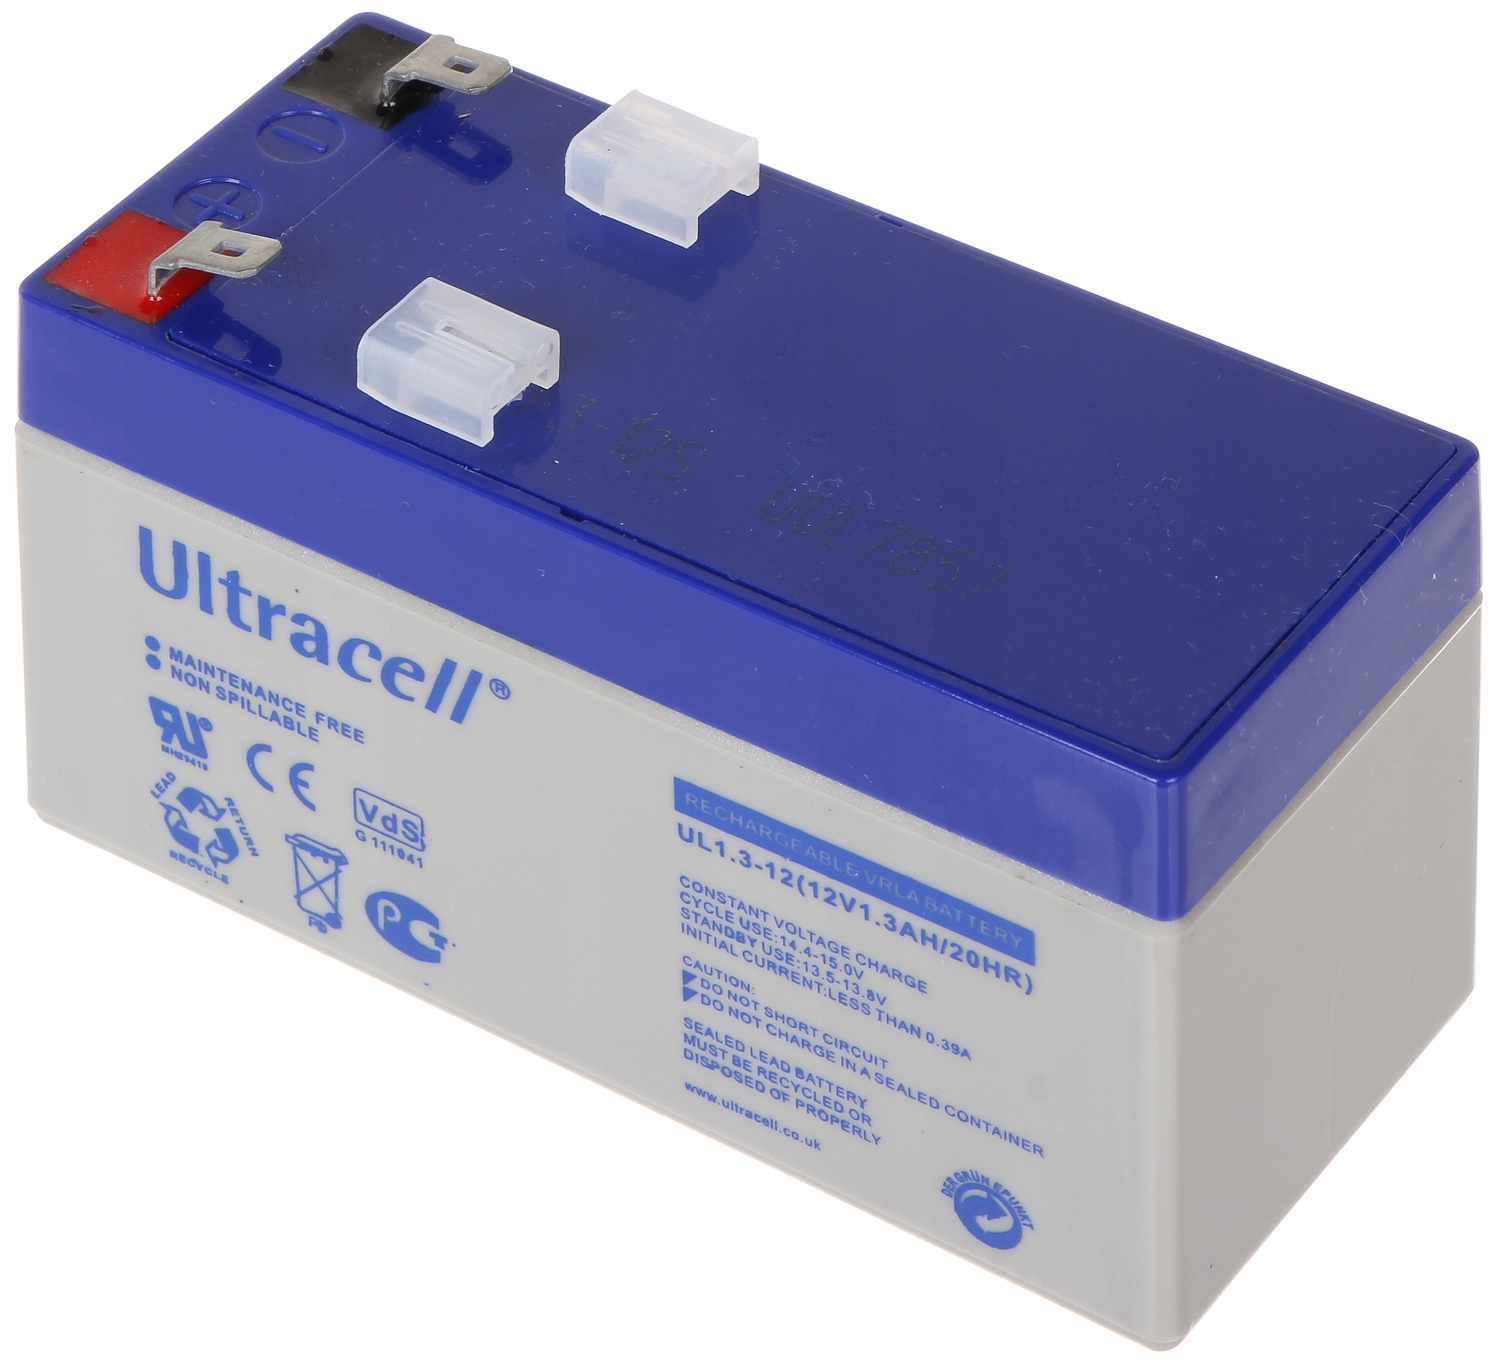 12v 1.2 ah. Аккумуляторная батарея "Ultracell", ul 7-12, 12v/7ah. Аккумулятор np3,5 /12. Аварийные аккумуляторы. Цена аккумулятора ul4-12.